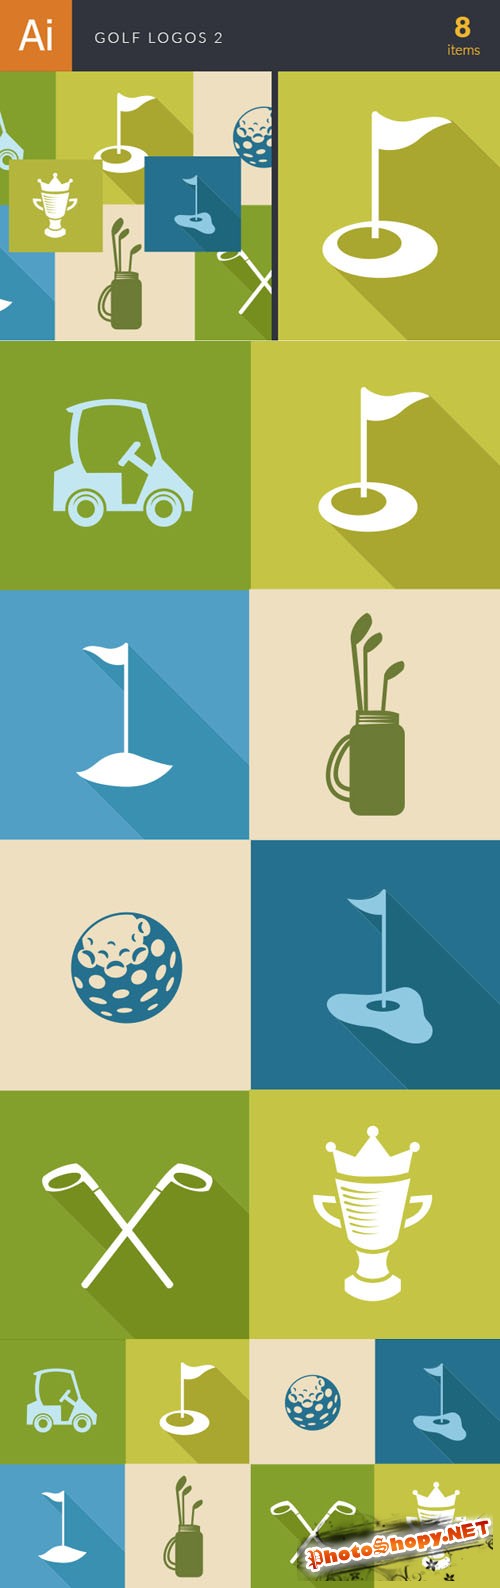 Golf Logos Vector Illustrations Pack 2